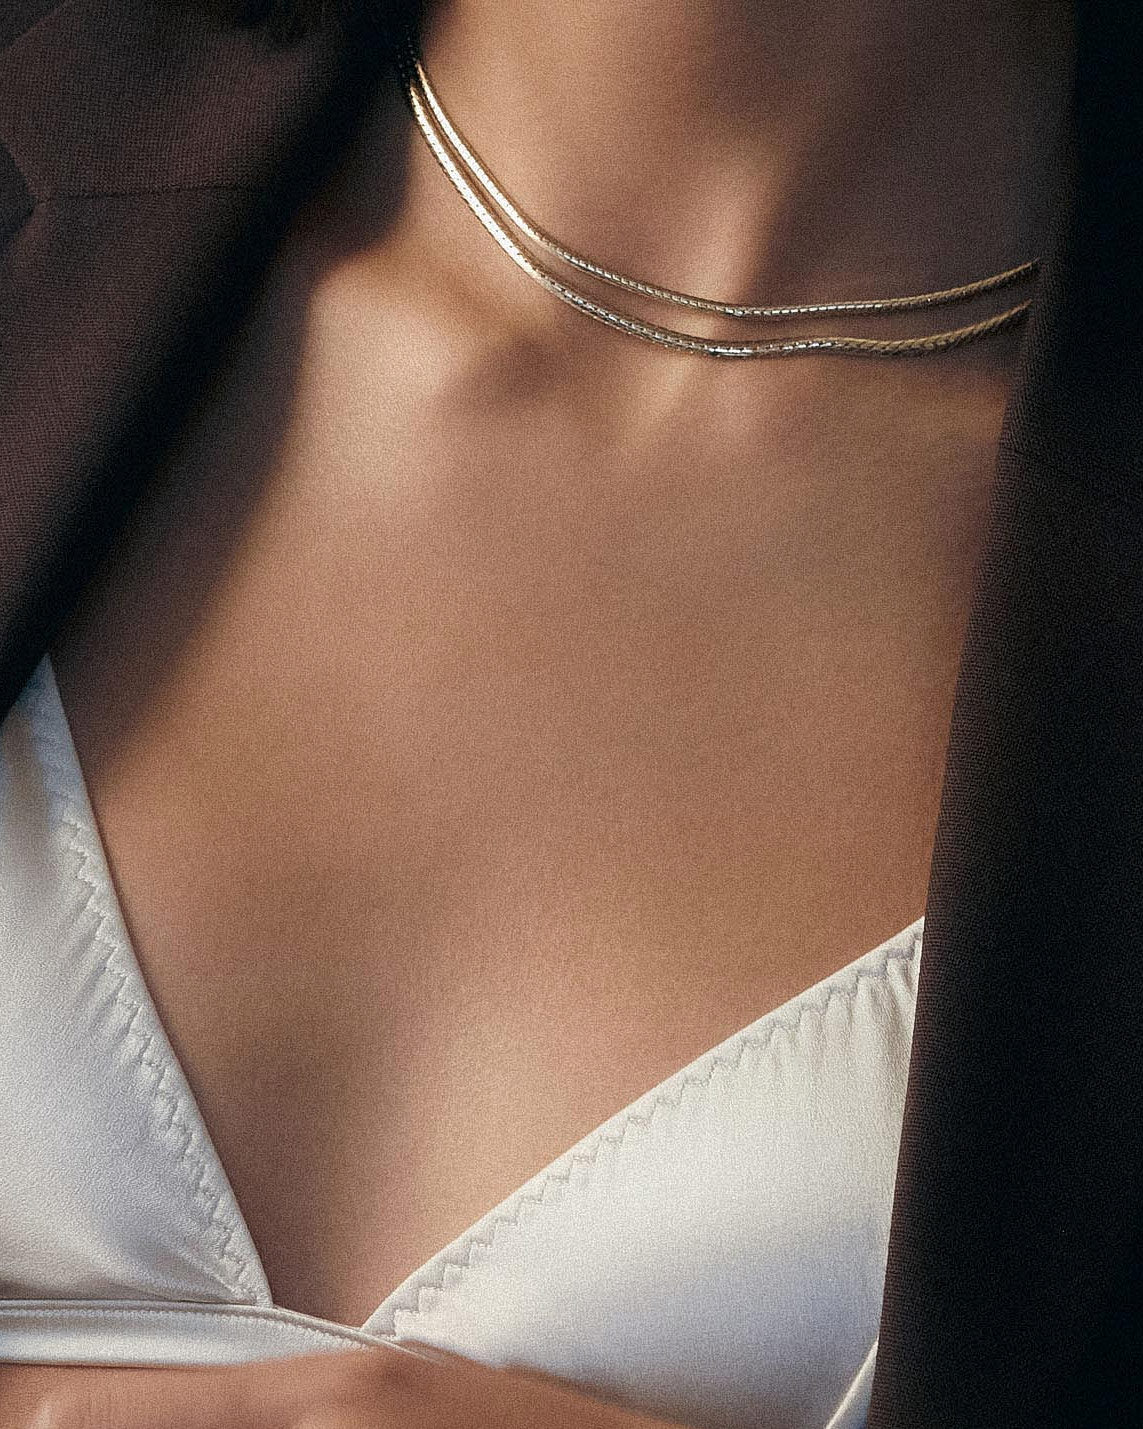 Model wearing the Kennedy Herringbone Chain I with a white satin bralette